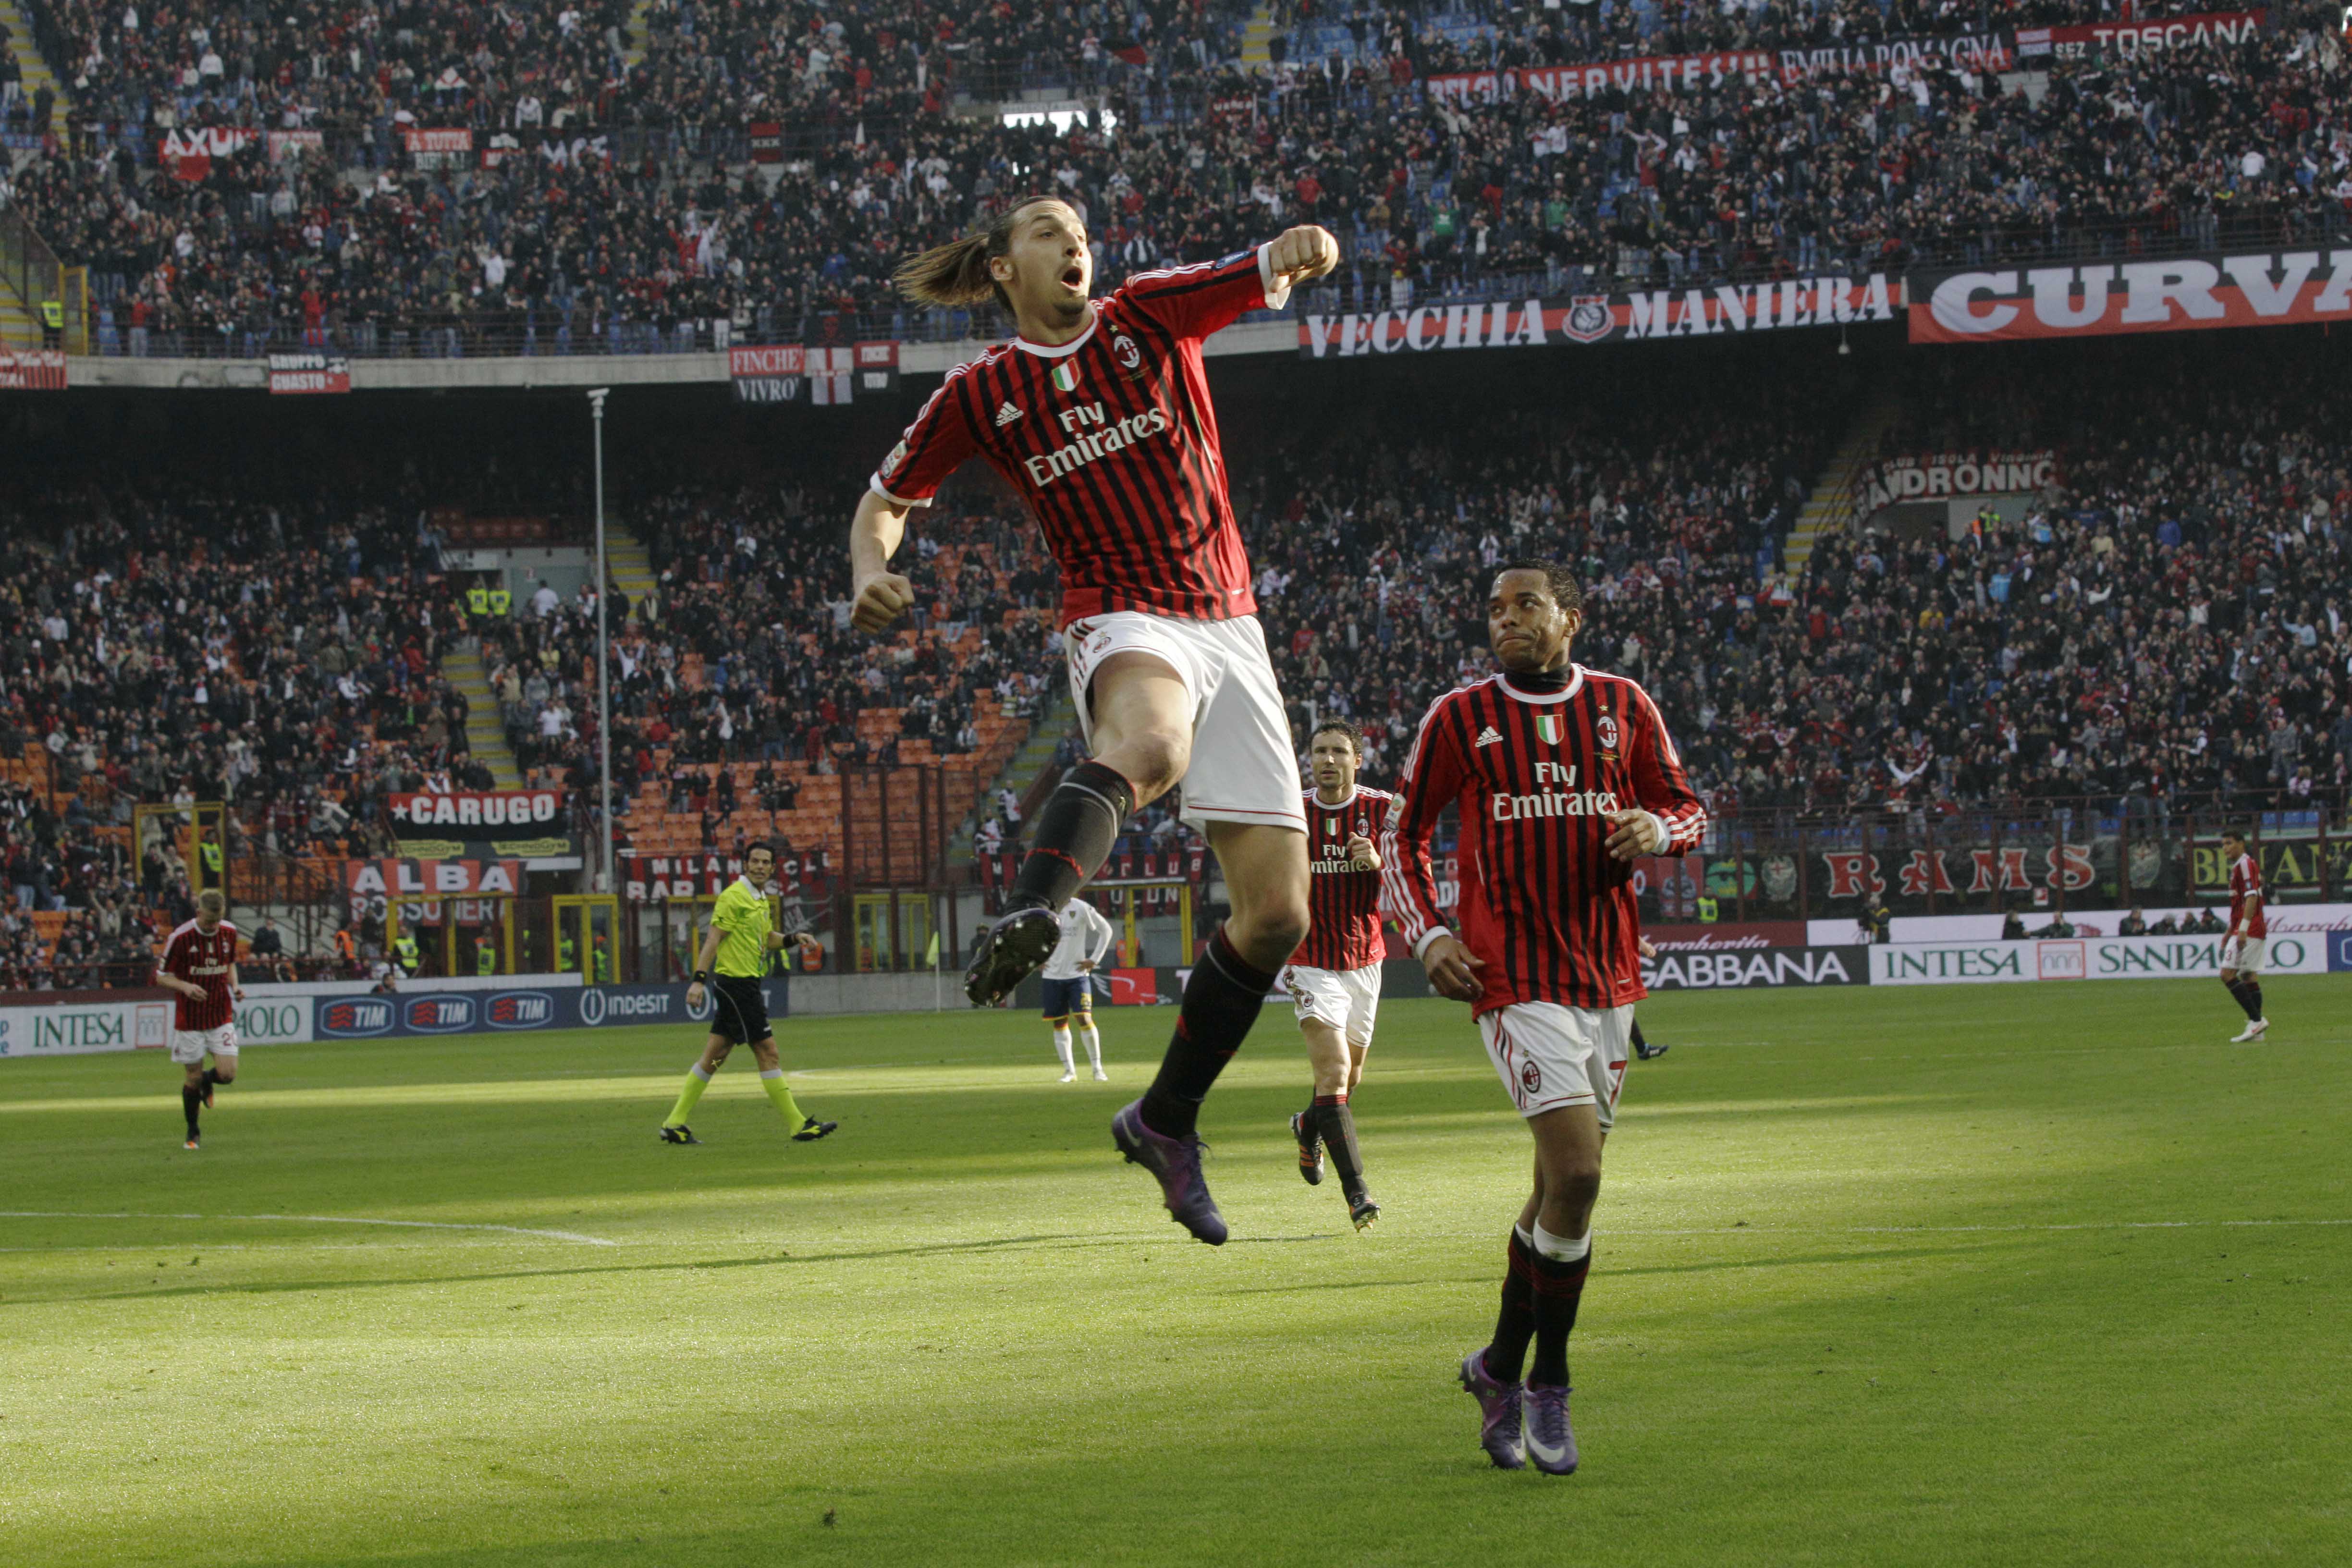 Zlatans numer klassiska målgest har blivit ett ständigt återkommande inslag i Milanmatcher under säsongen.